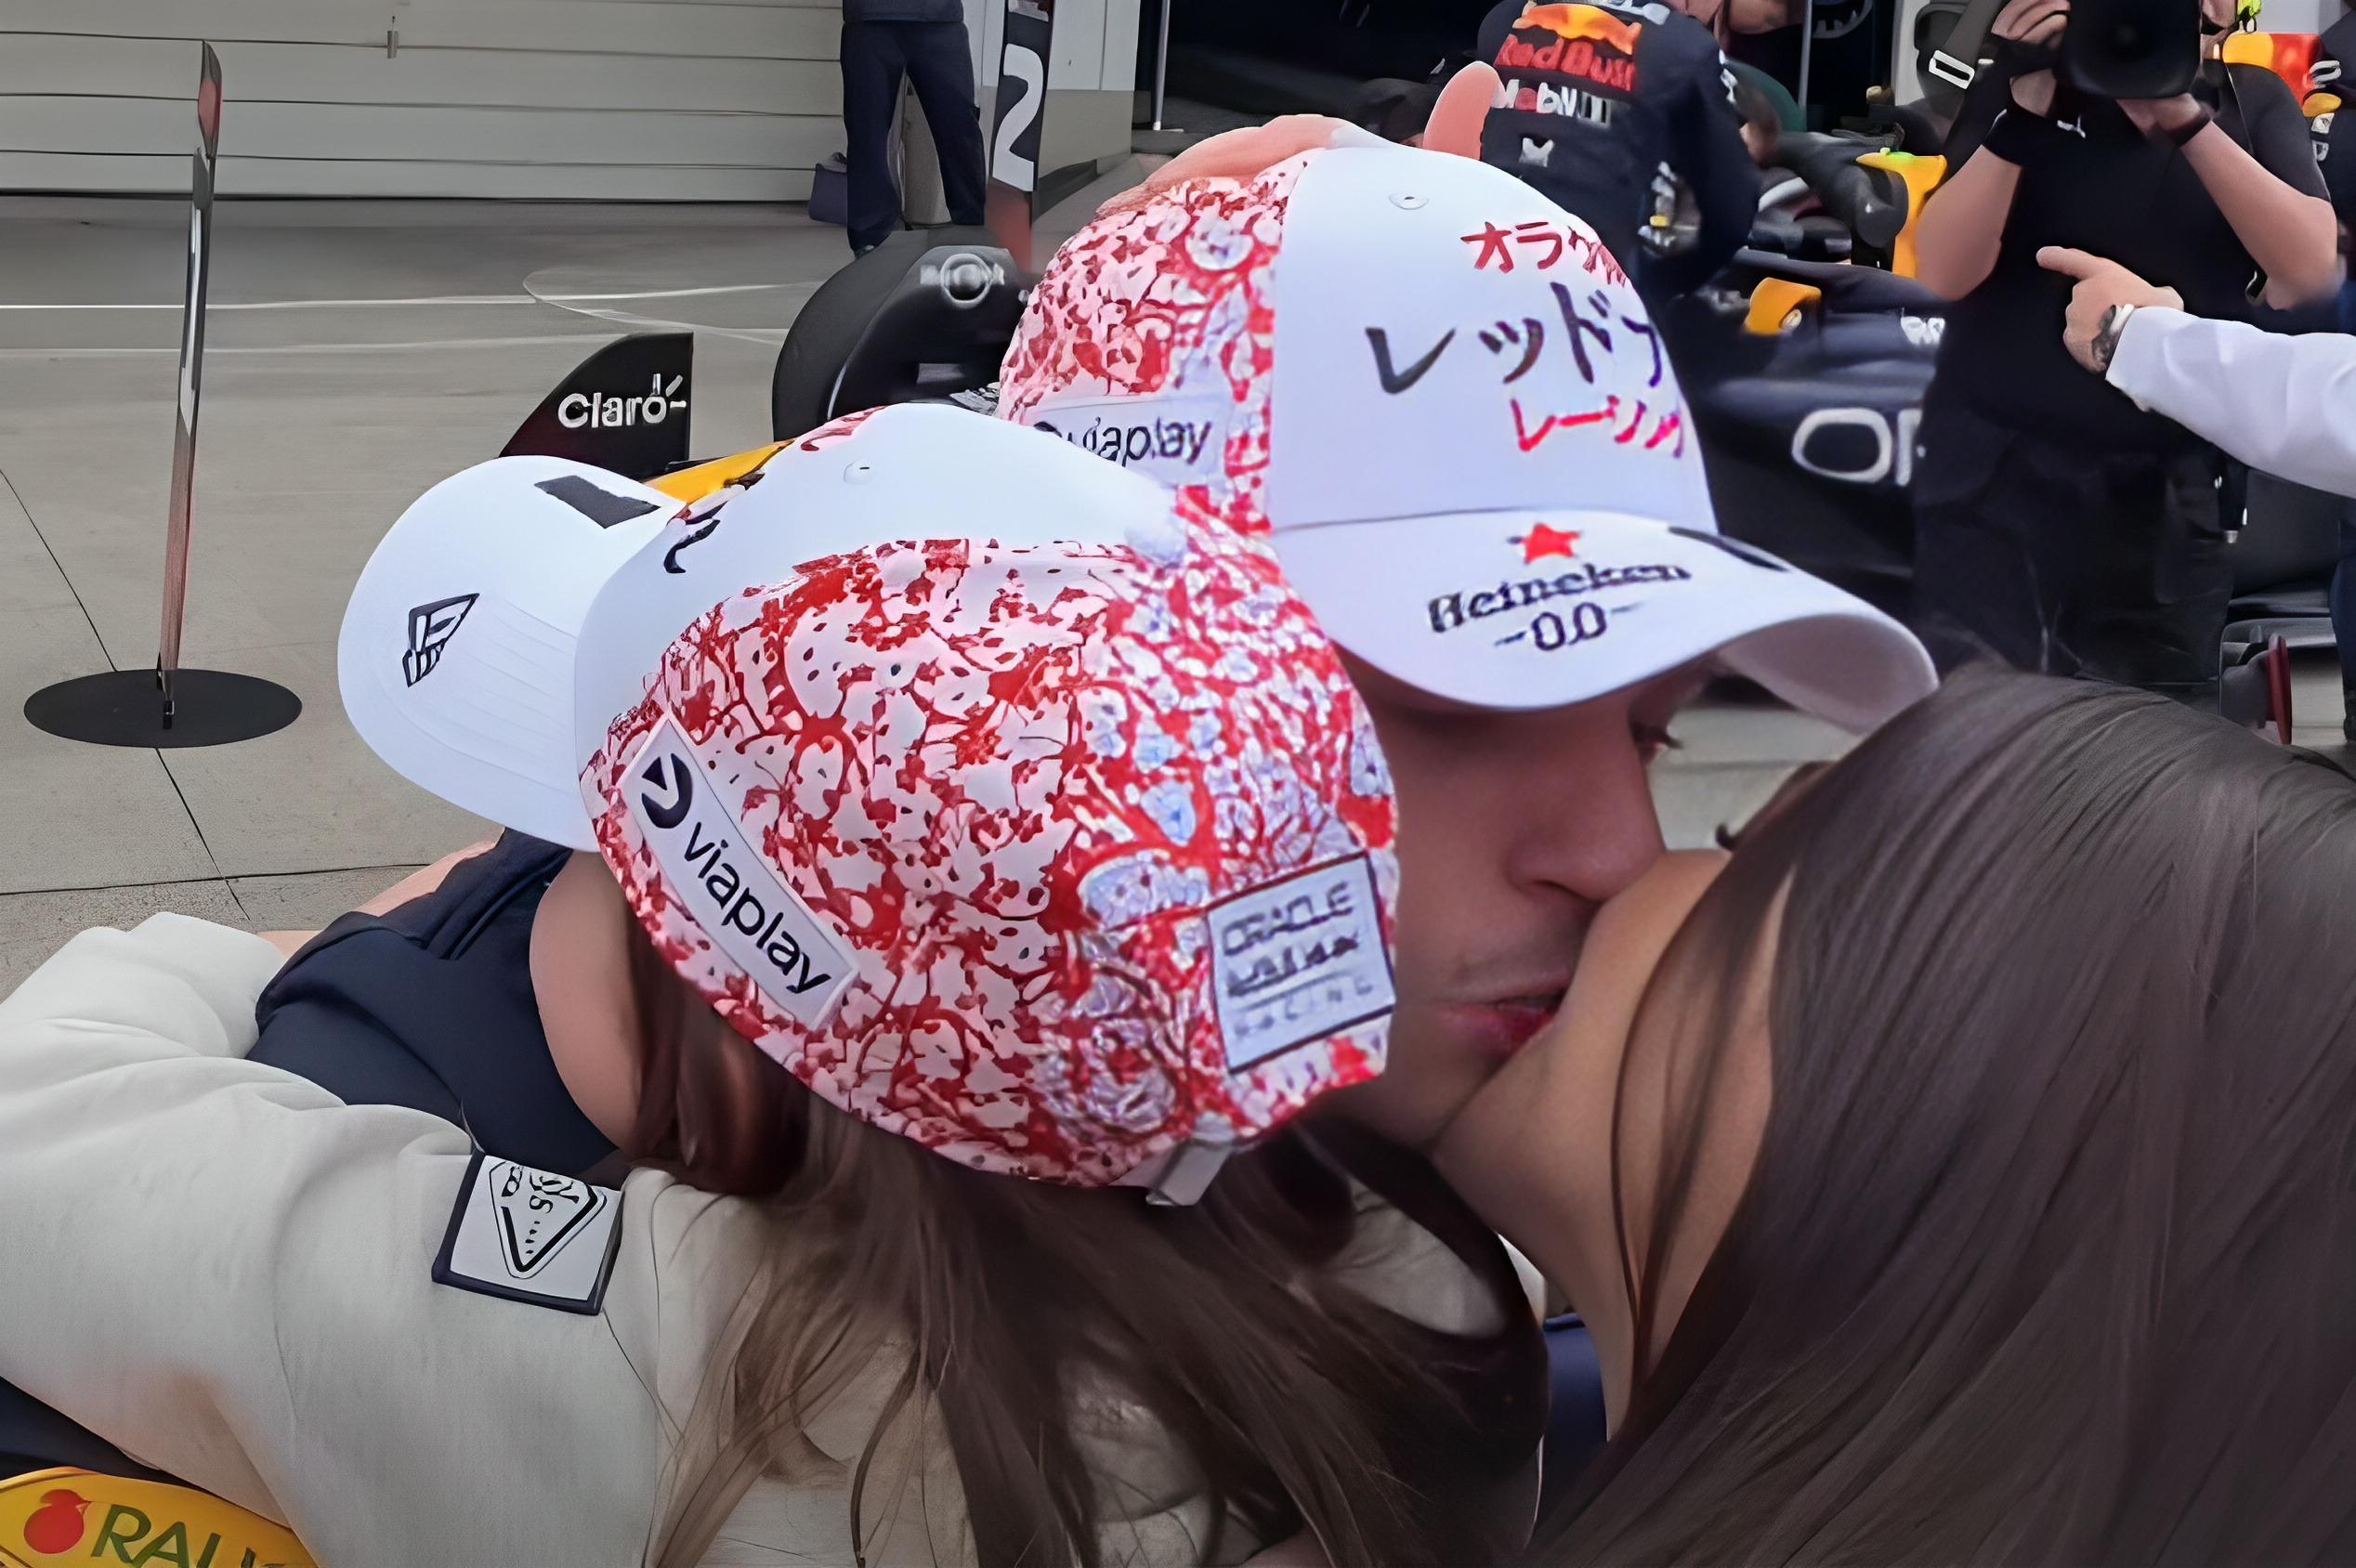 Kelly Piquet e Penelope comemoram vitória de Max Verstappen no GP do Japão